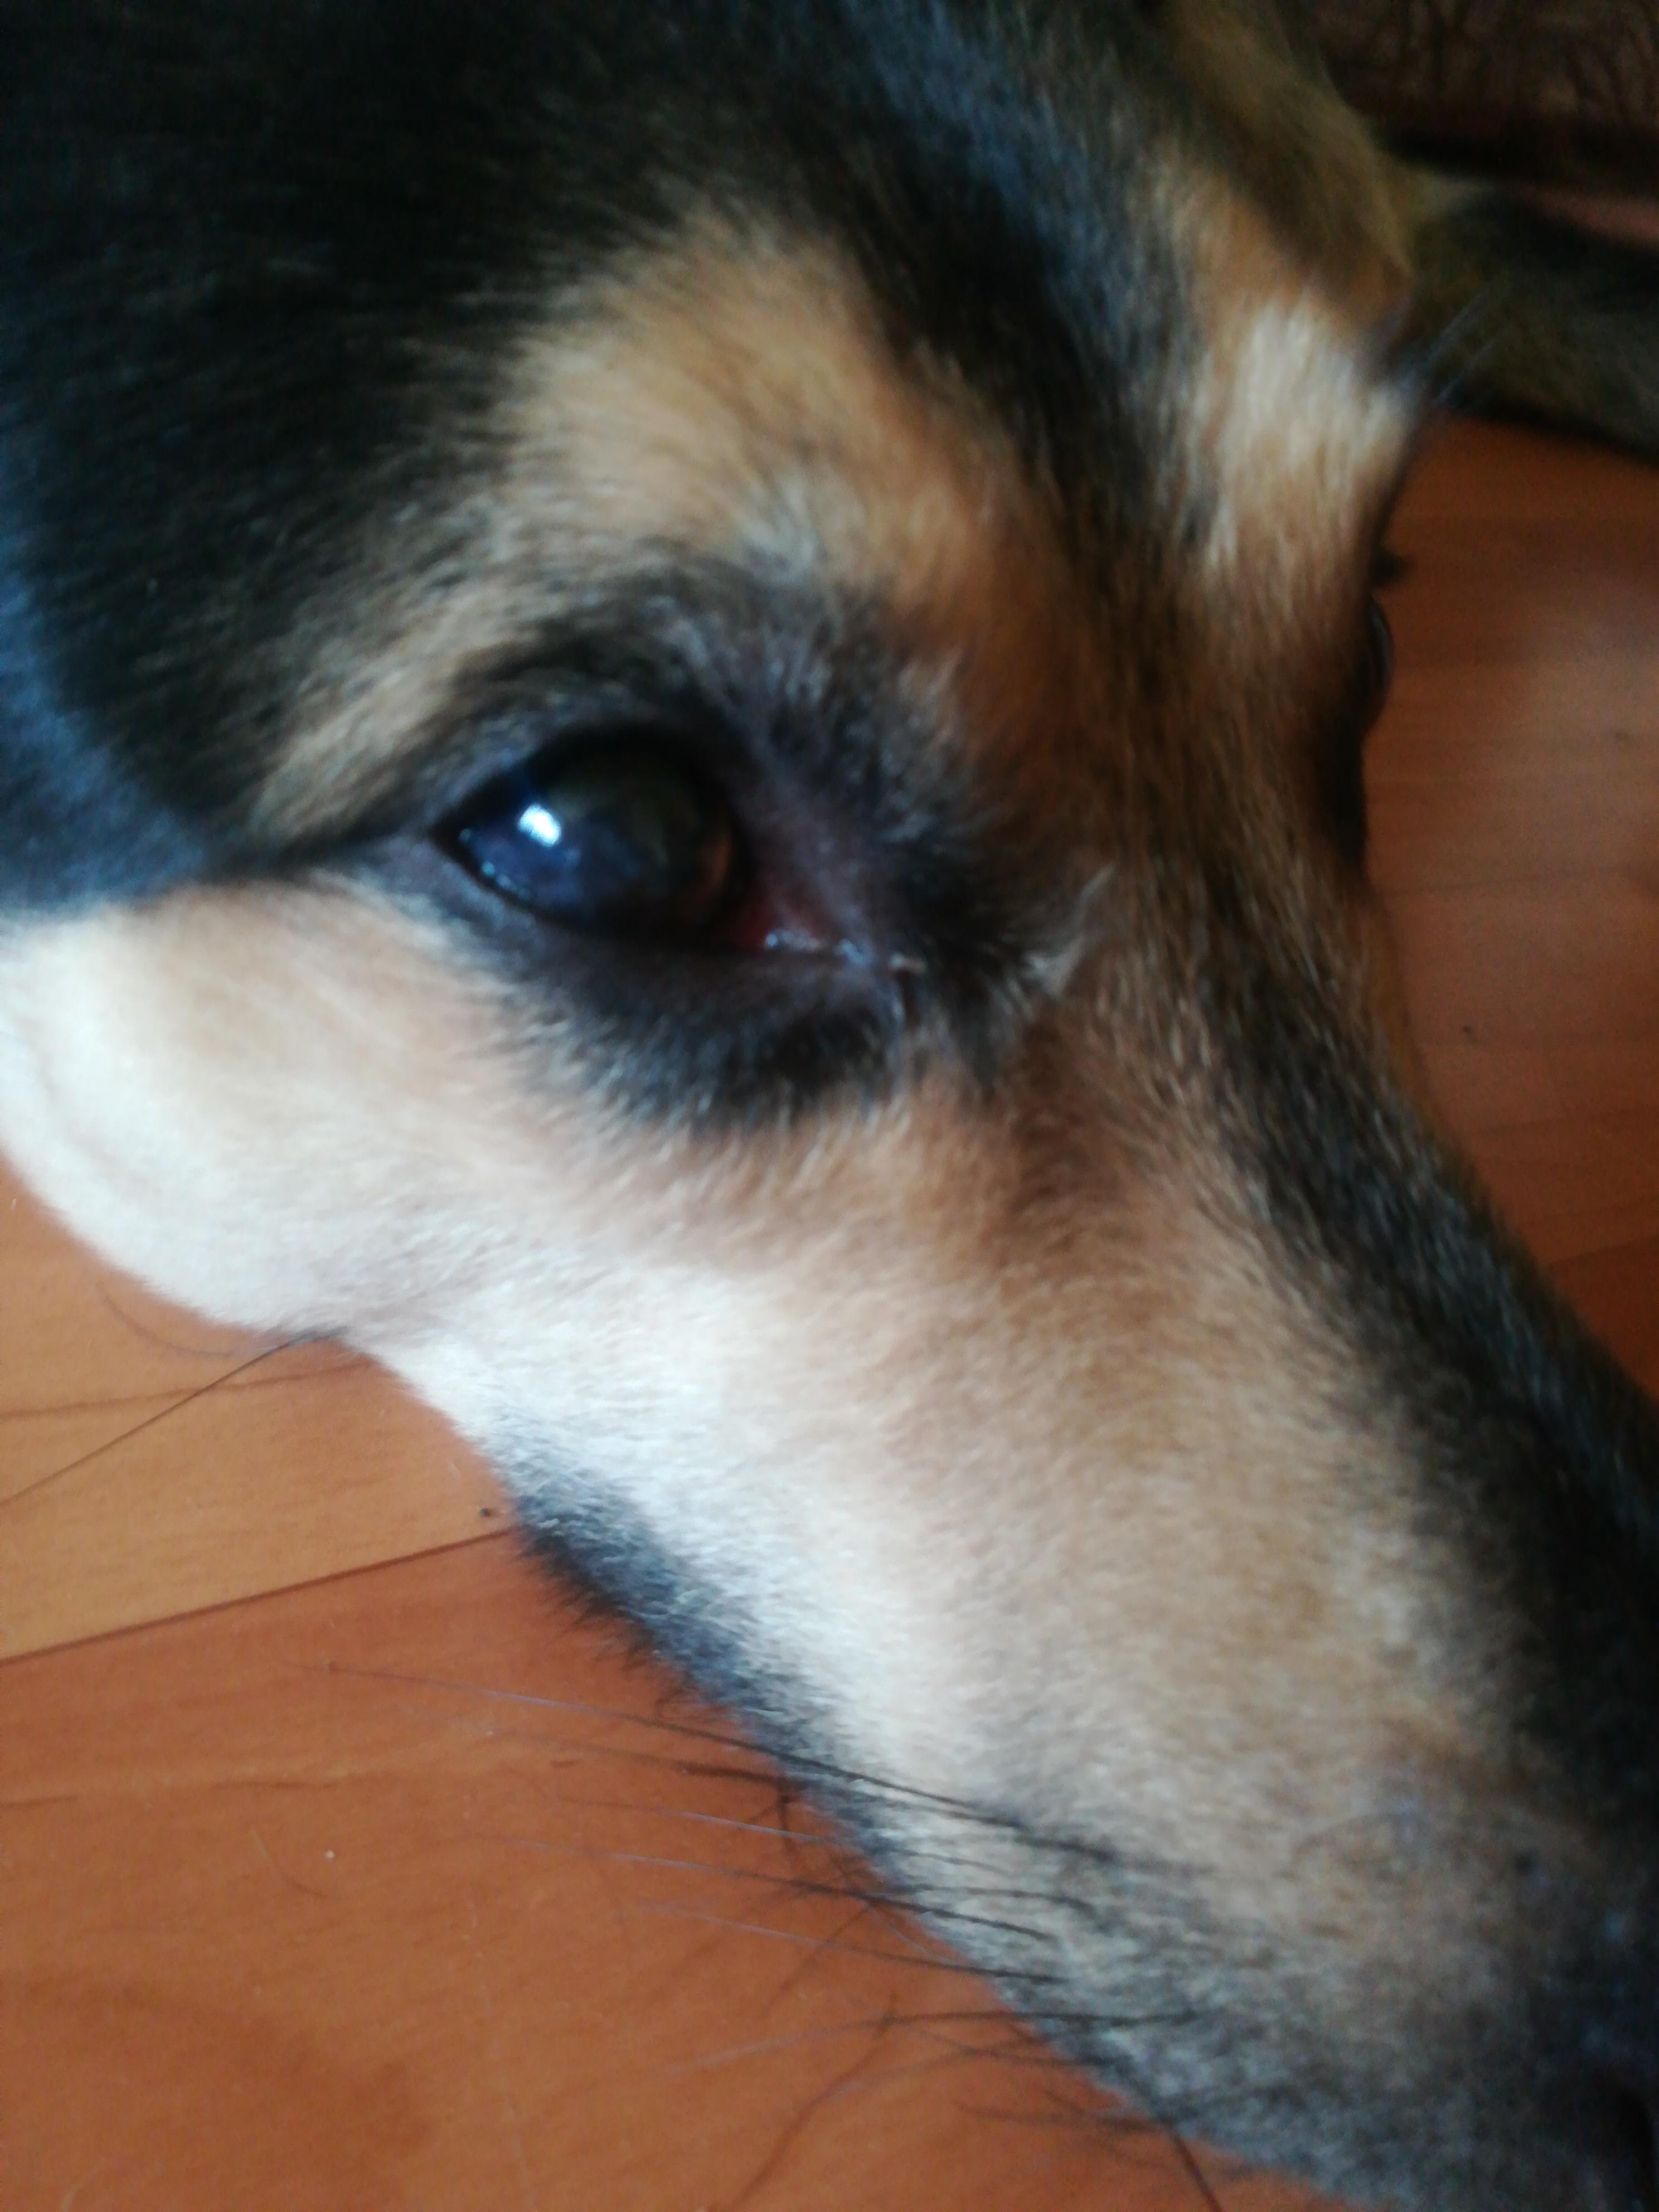 Пелена на глазах какие. Белая пелена на глазу у собаки. Мутная пленка на глазу собаки. У собаки затягивается глаза пленкой.